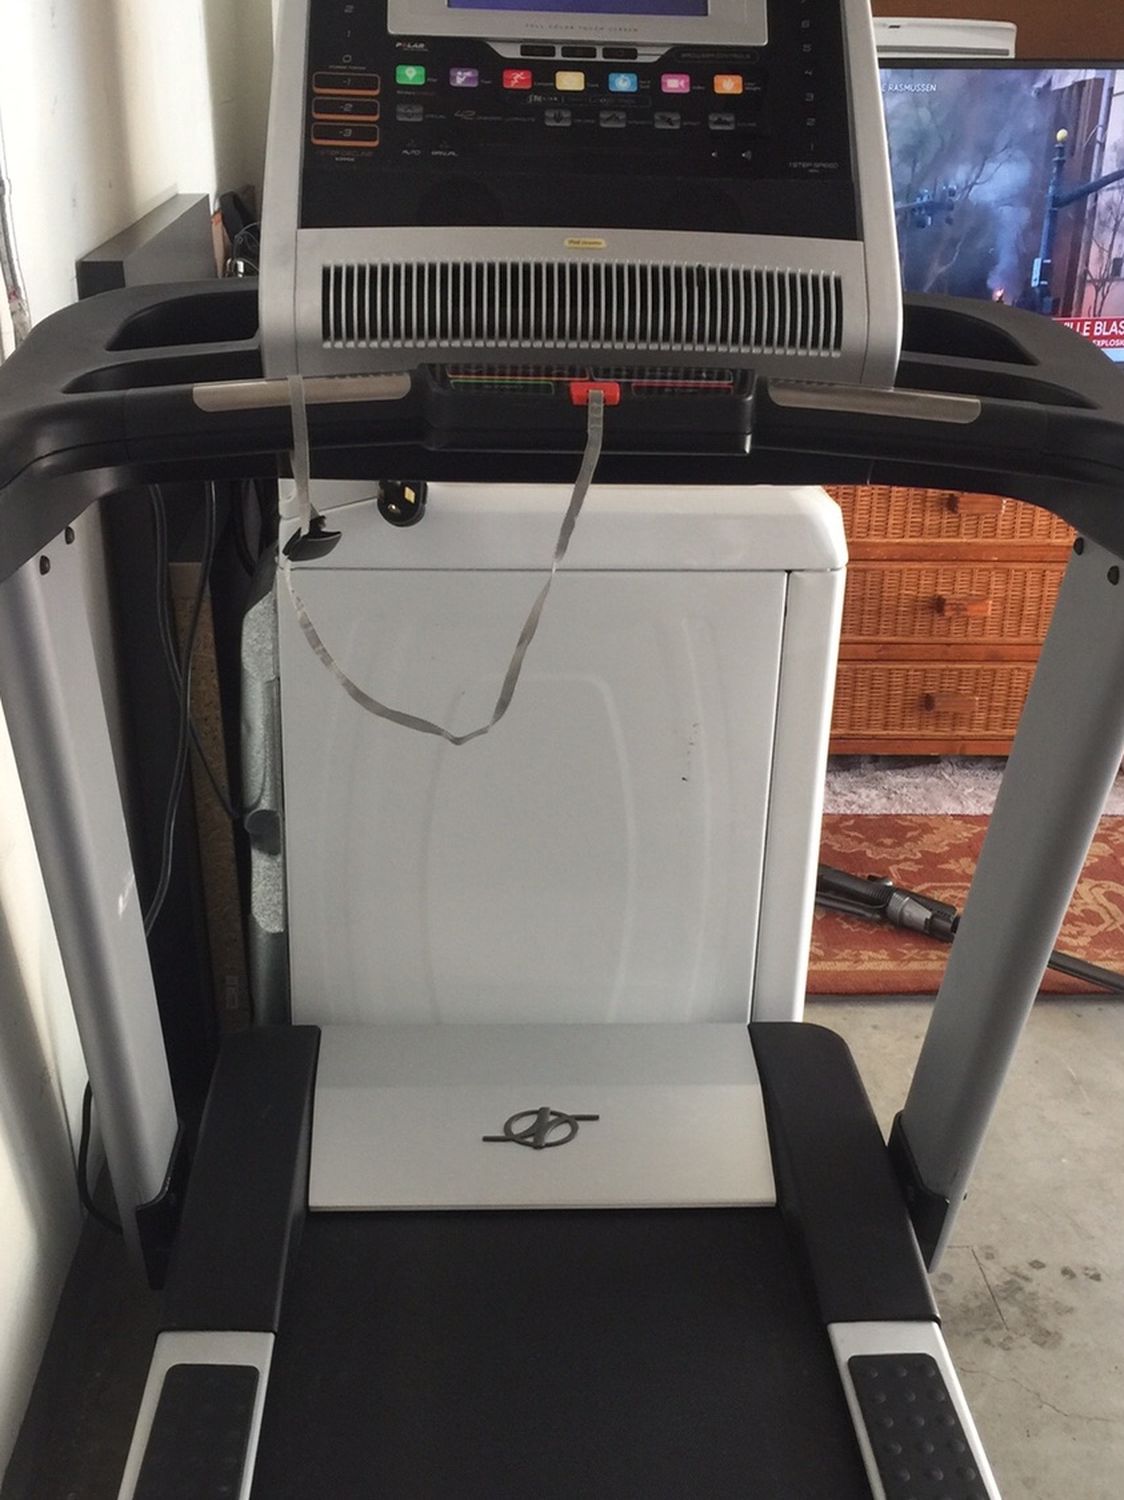 NordicTrack Elite 9700 Pro Treadmill